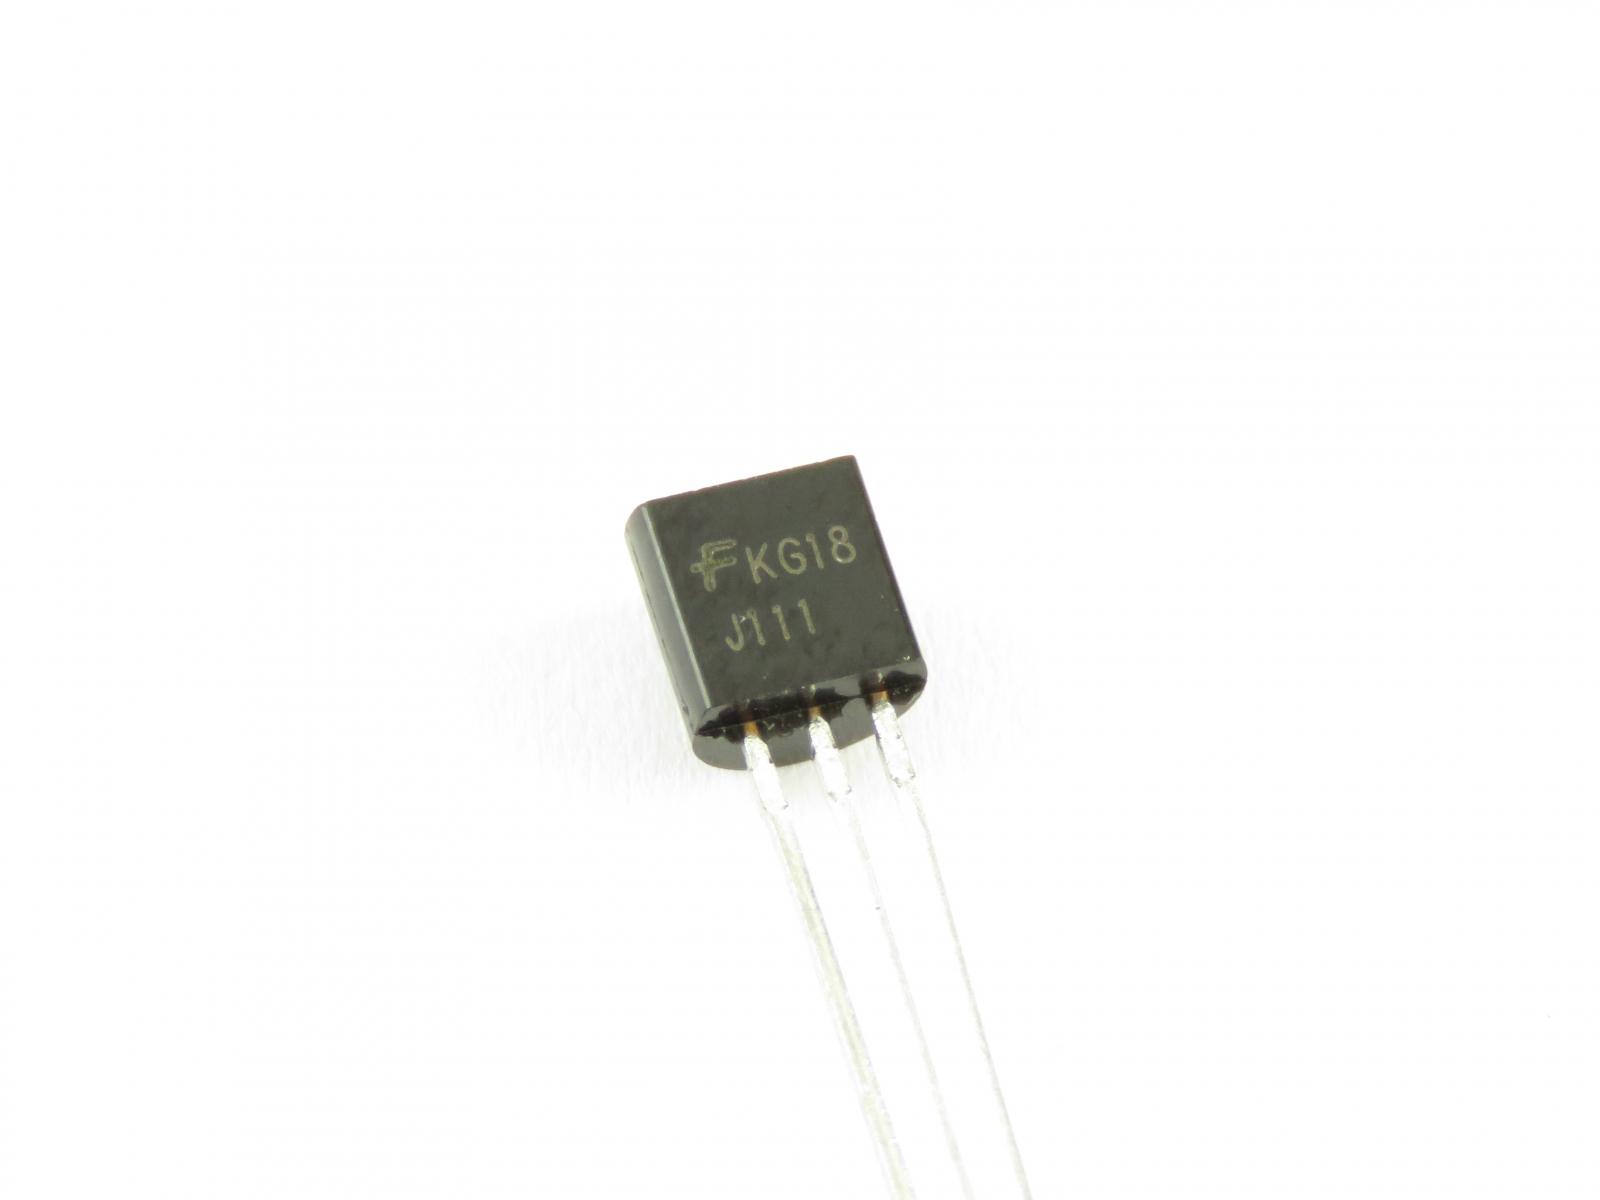 Transistor J111